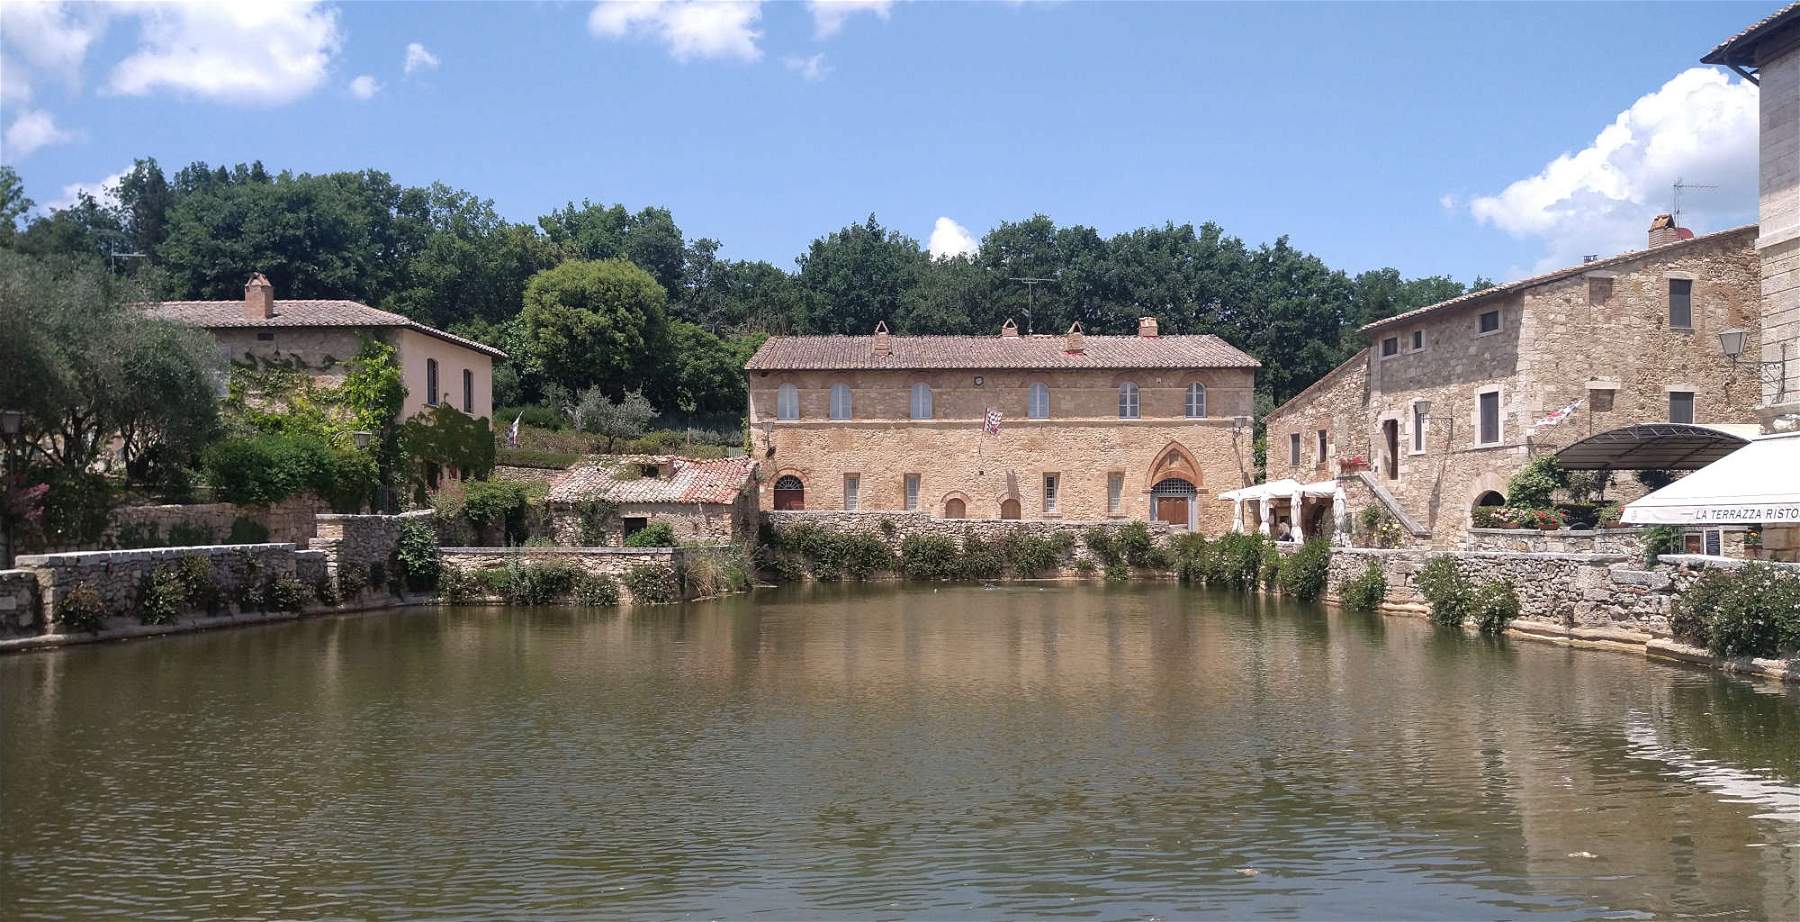 Bagno Vignoni, das Dorf mit einem Bad statt einem Platz